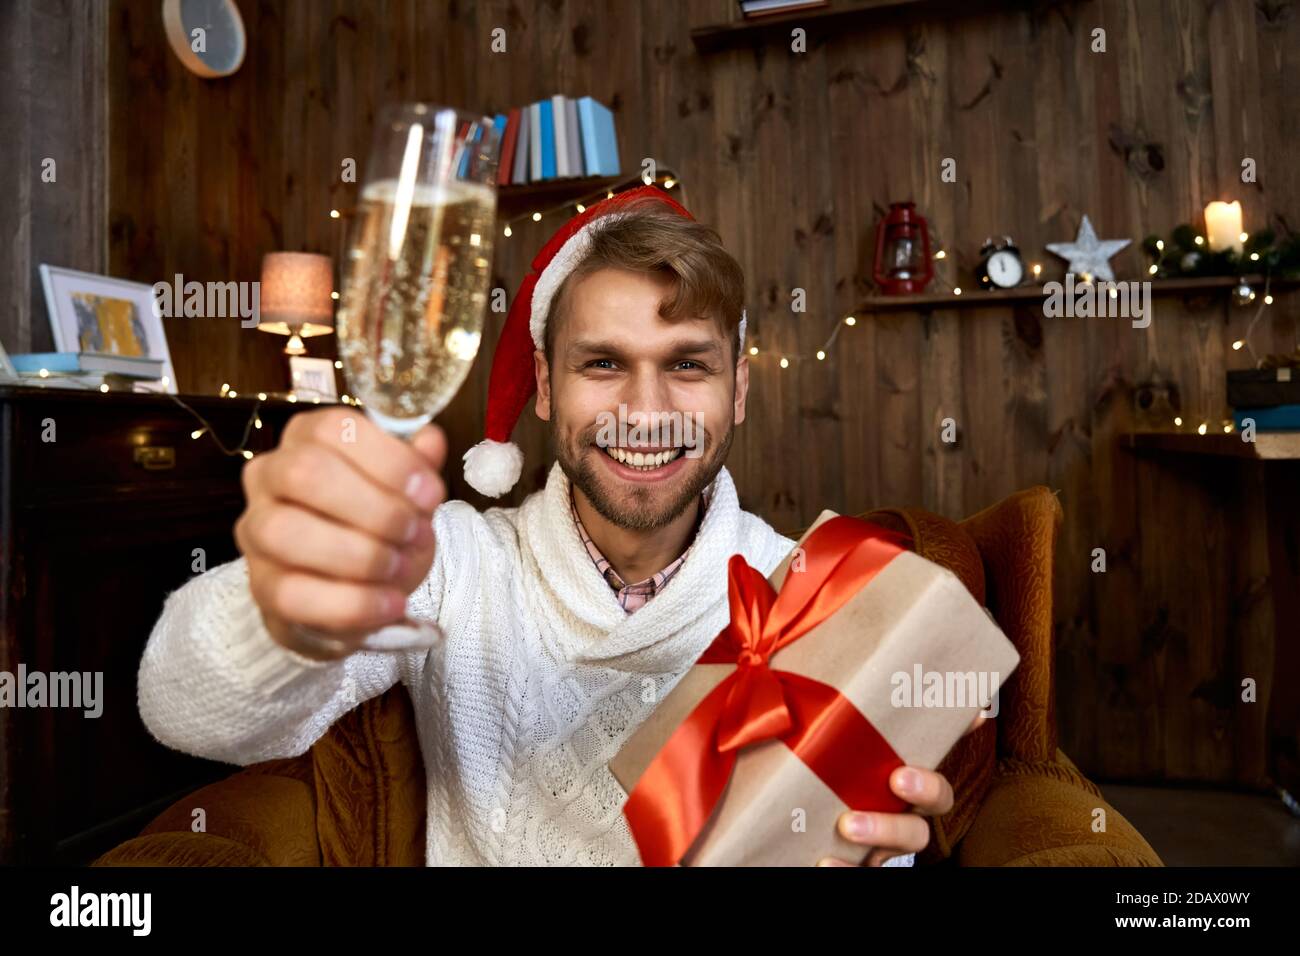 Happy man wearing santa hat holding Christmas gift looking at camera. Stock Photo